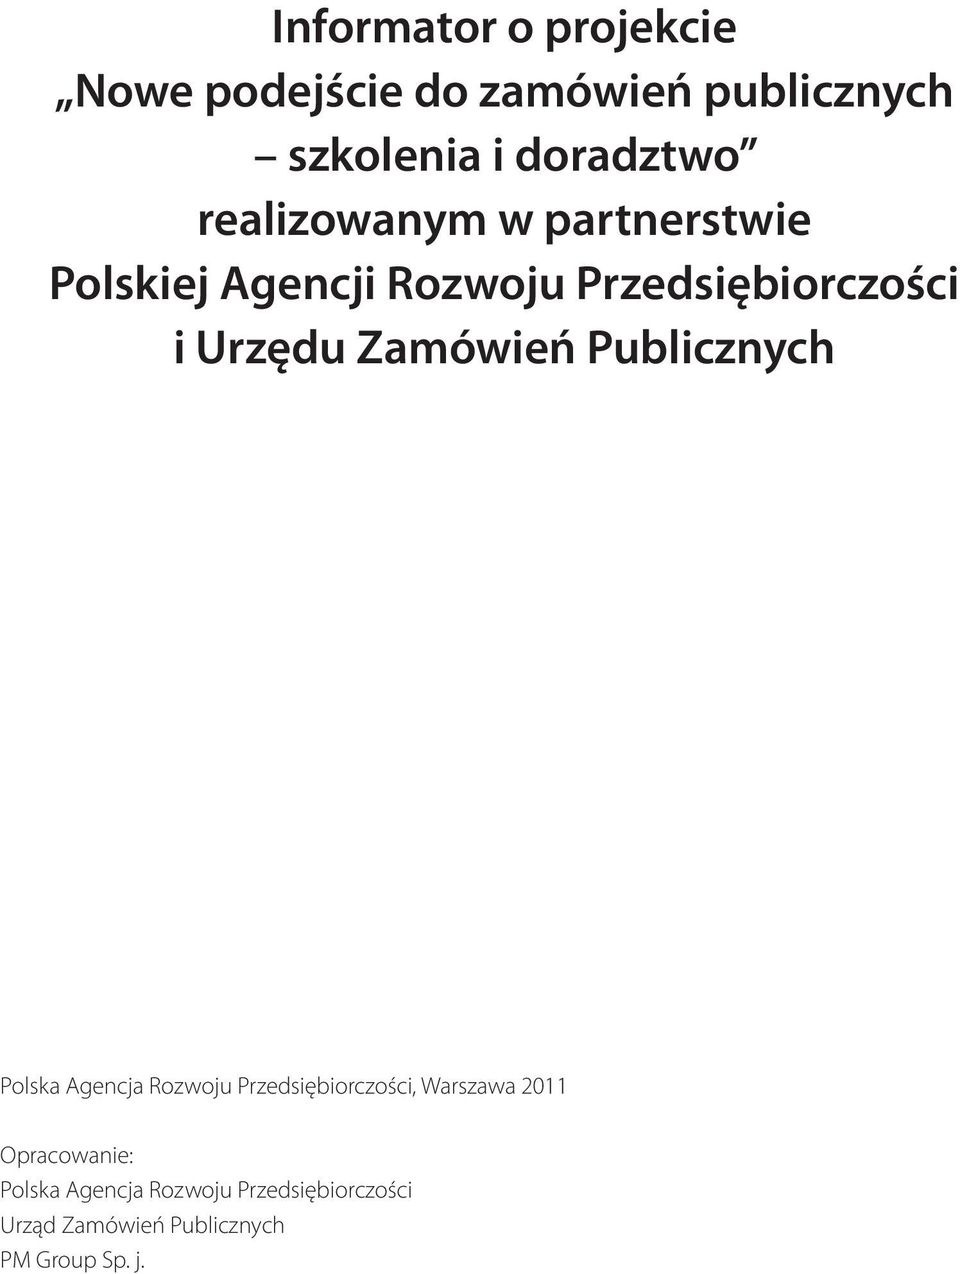 Zamówień Publicznych Polska Agencja Rozwoju Przedsiębiorczości, Warszawa 2011